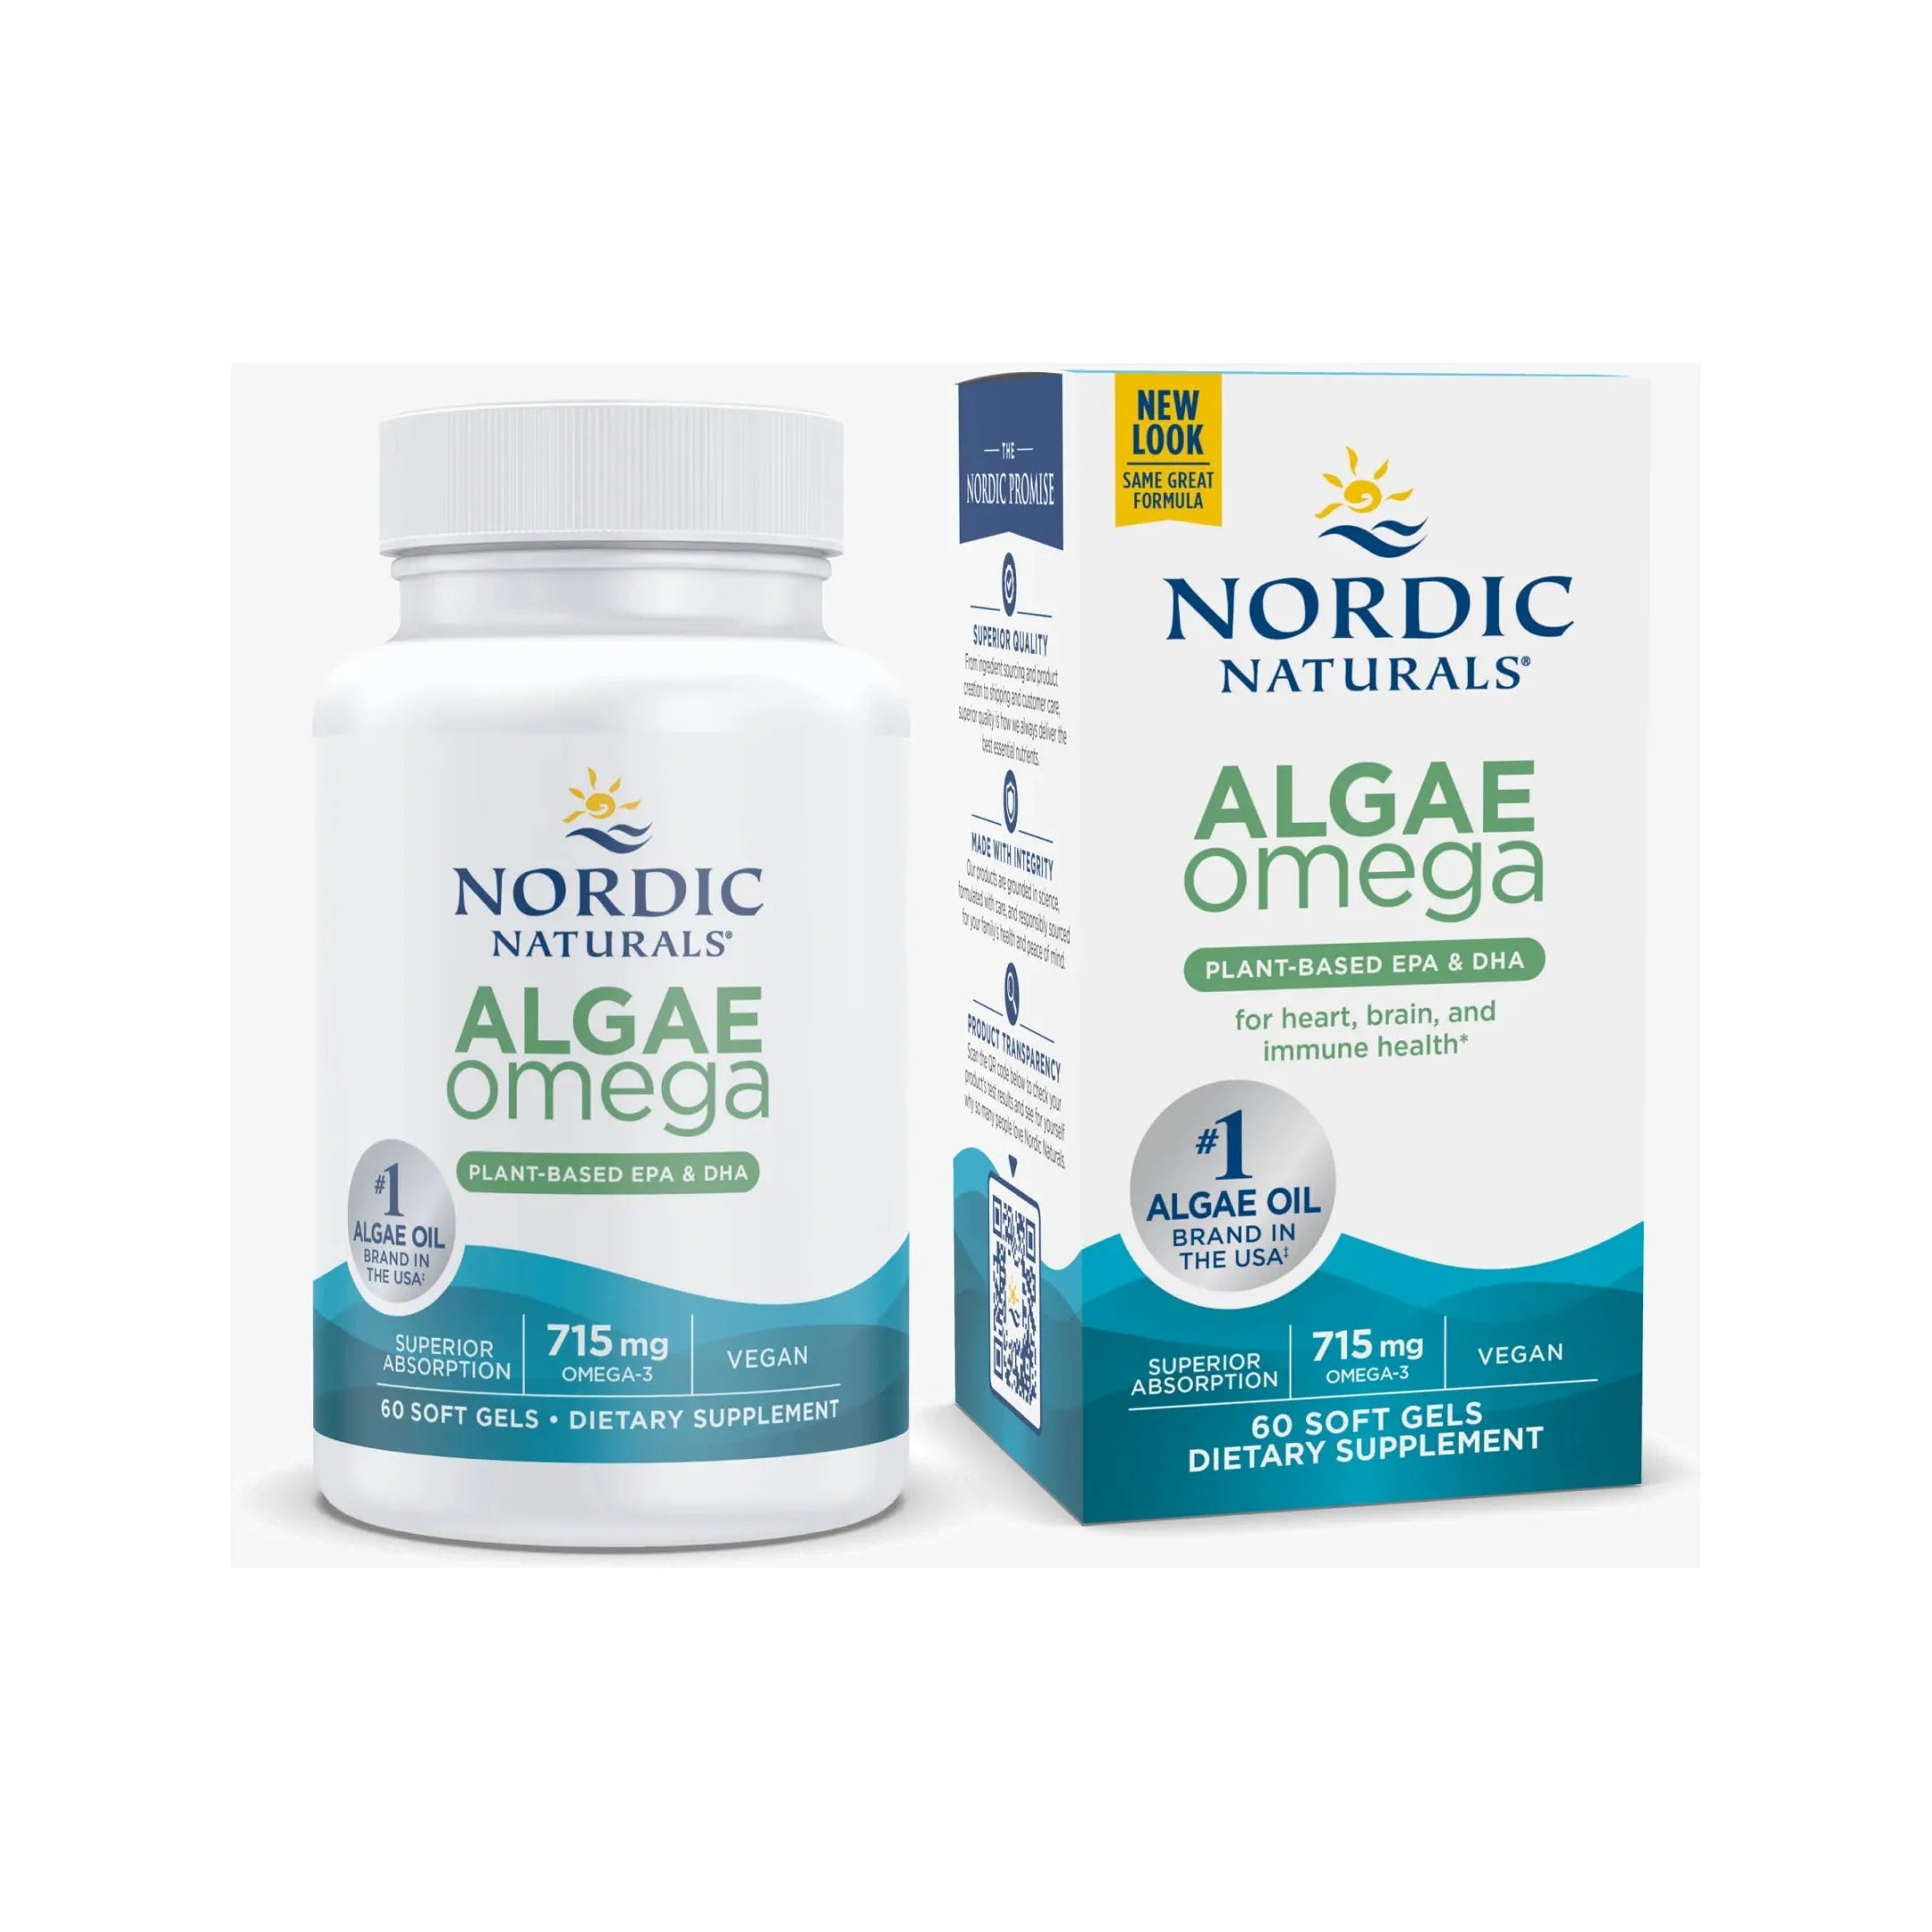 NORDIC NATURALS Algae Omega - 60 Count